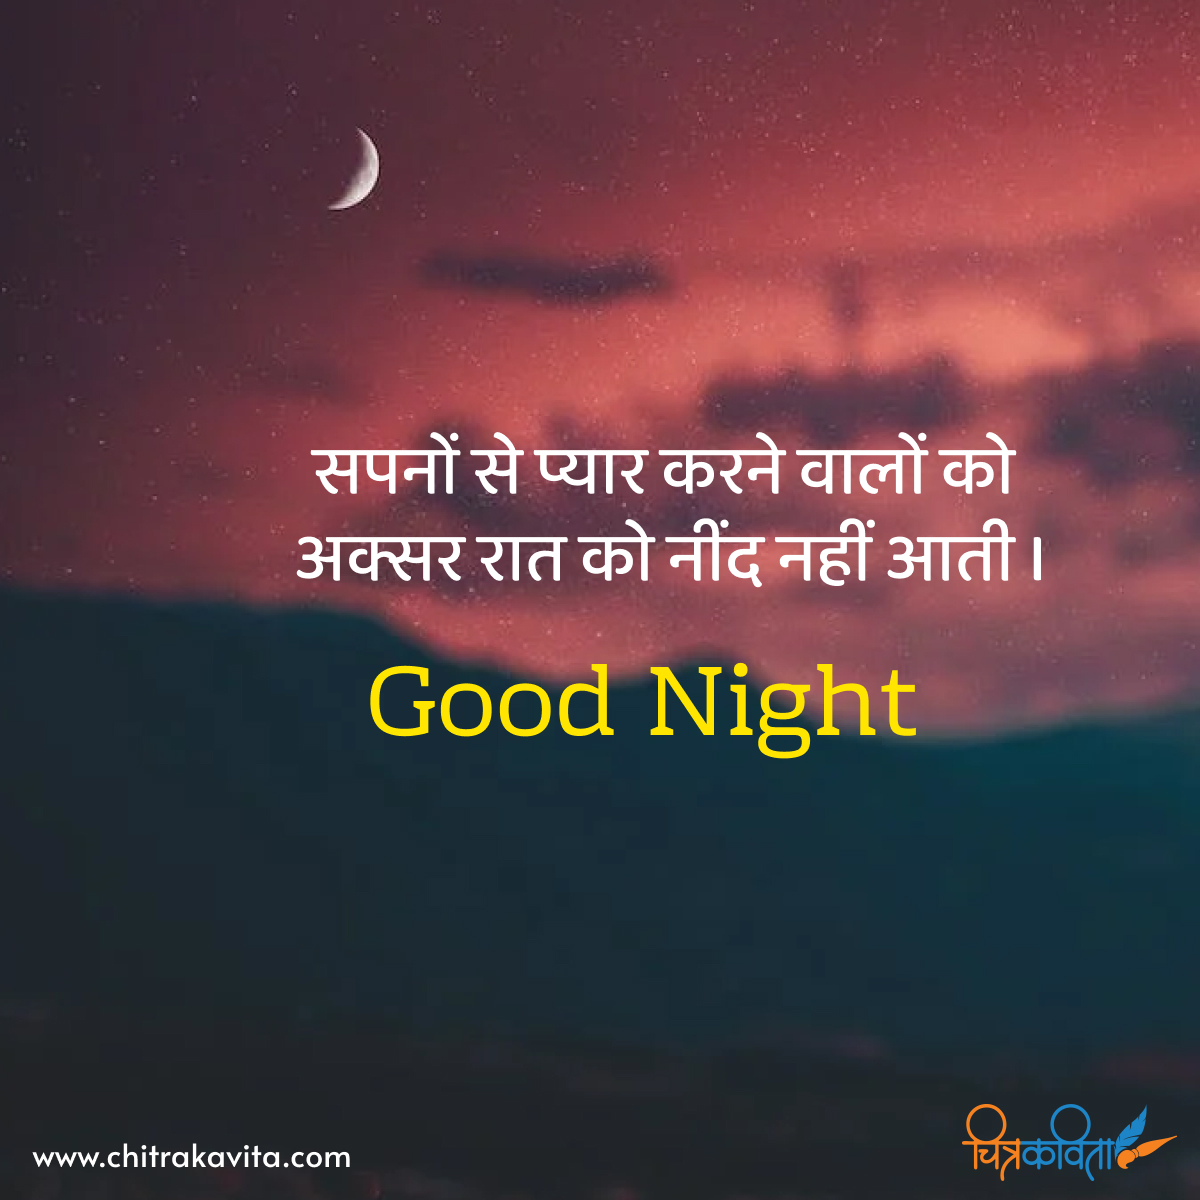 hindi good night quotes, hindi quotes, sapne, love you dreams, good night quotes in hindi, hindi status